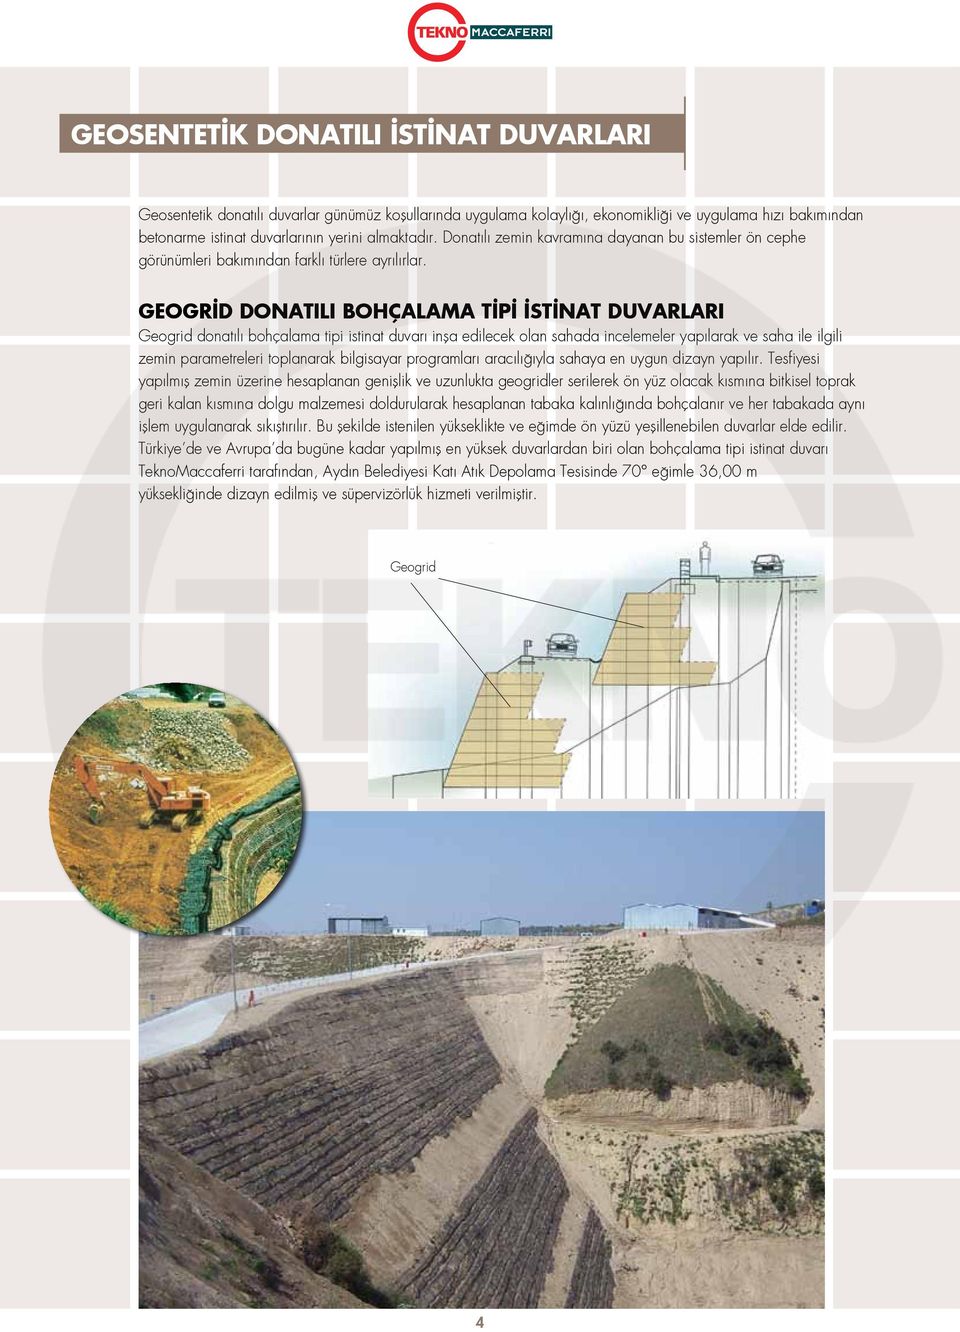 GEOGR D DONATILI BOHÇALAMA T P ST NAT DUVARLARI Geogrid donatılı bohçalama tipi istinat duvarı inşa edilecek olan sahada incelemeler yapılarak ve saha ile ilgili zemin parametreleri toplanarak